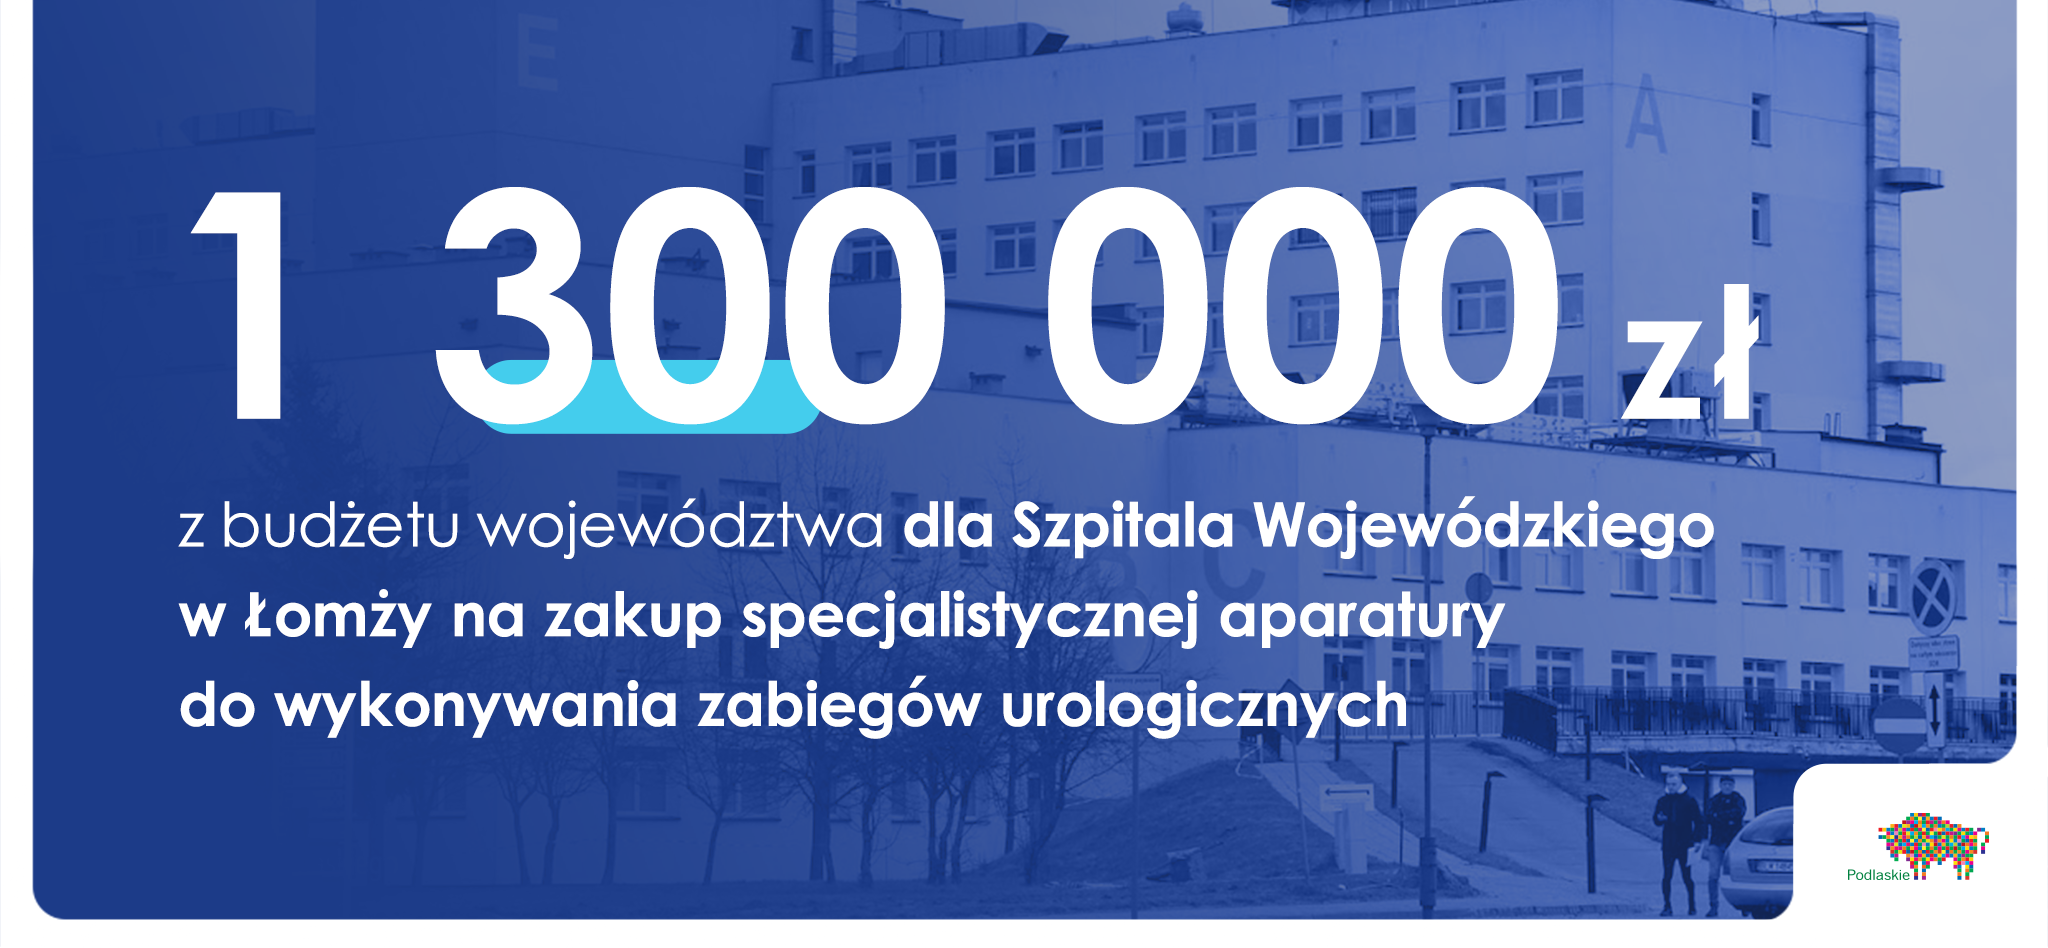 grafika z kwotą milion trzysta tysięcy dla Szpitala Wojewódzkiego w Łomży